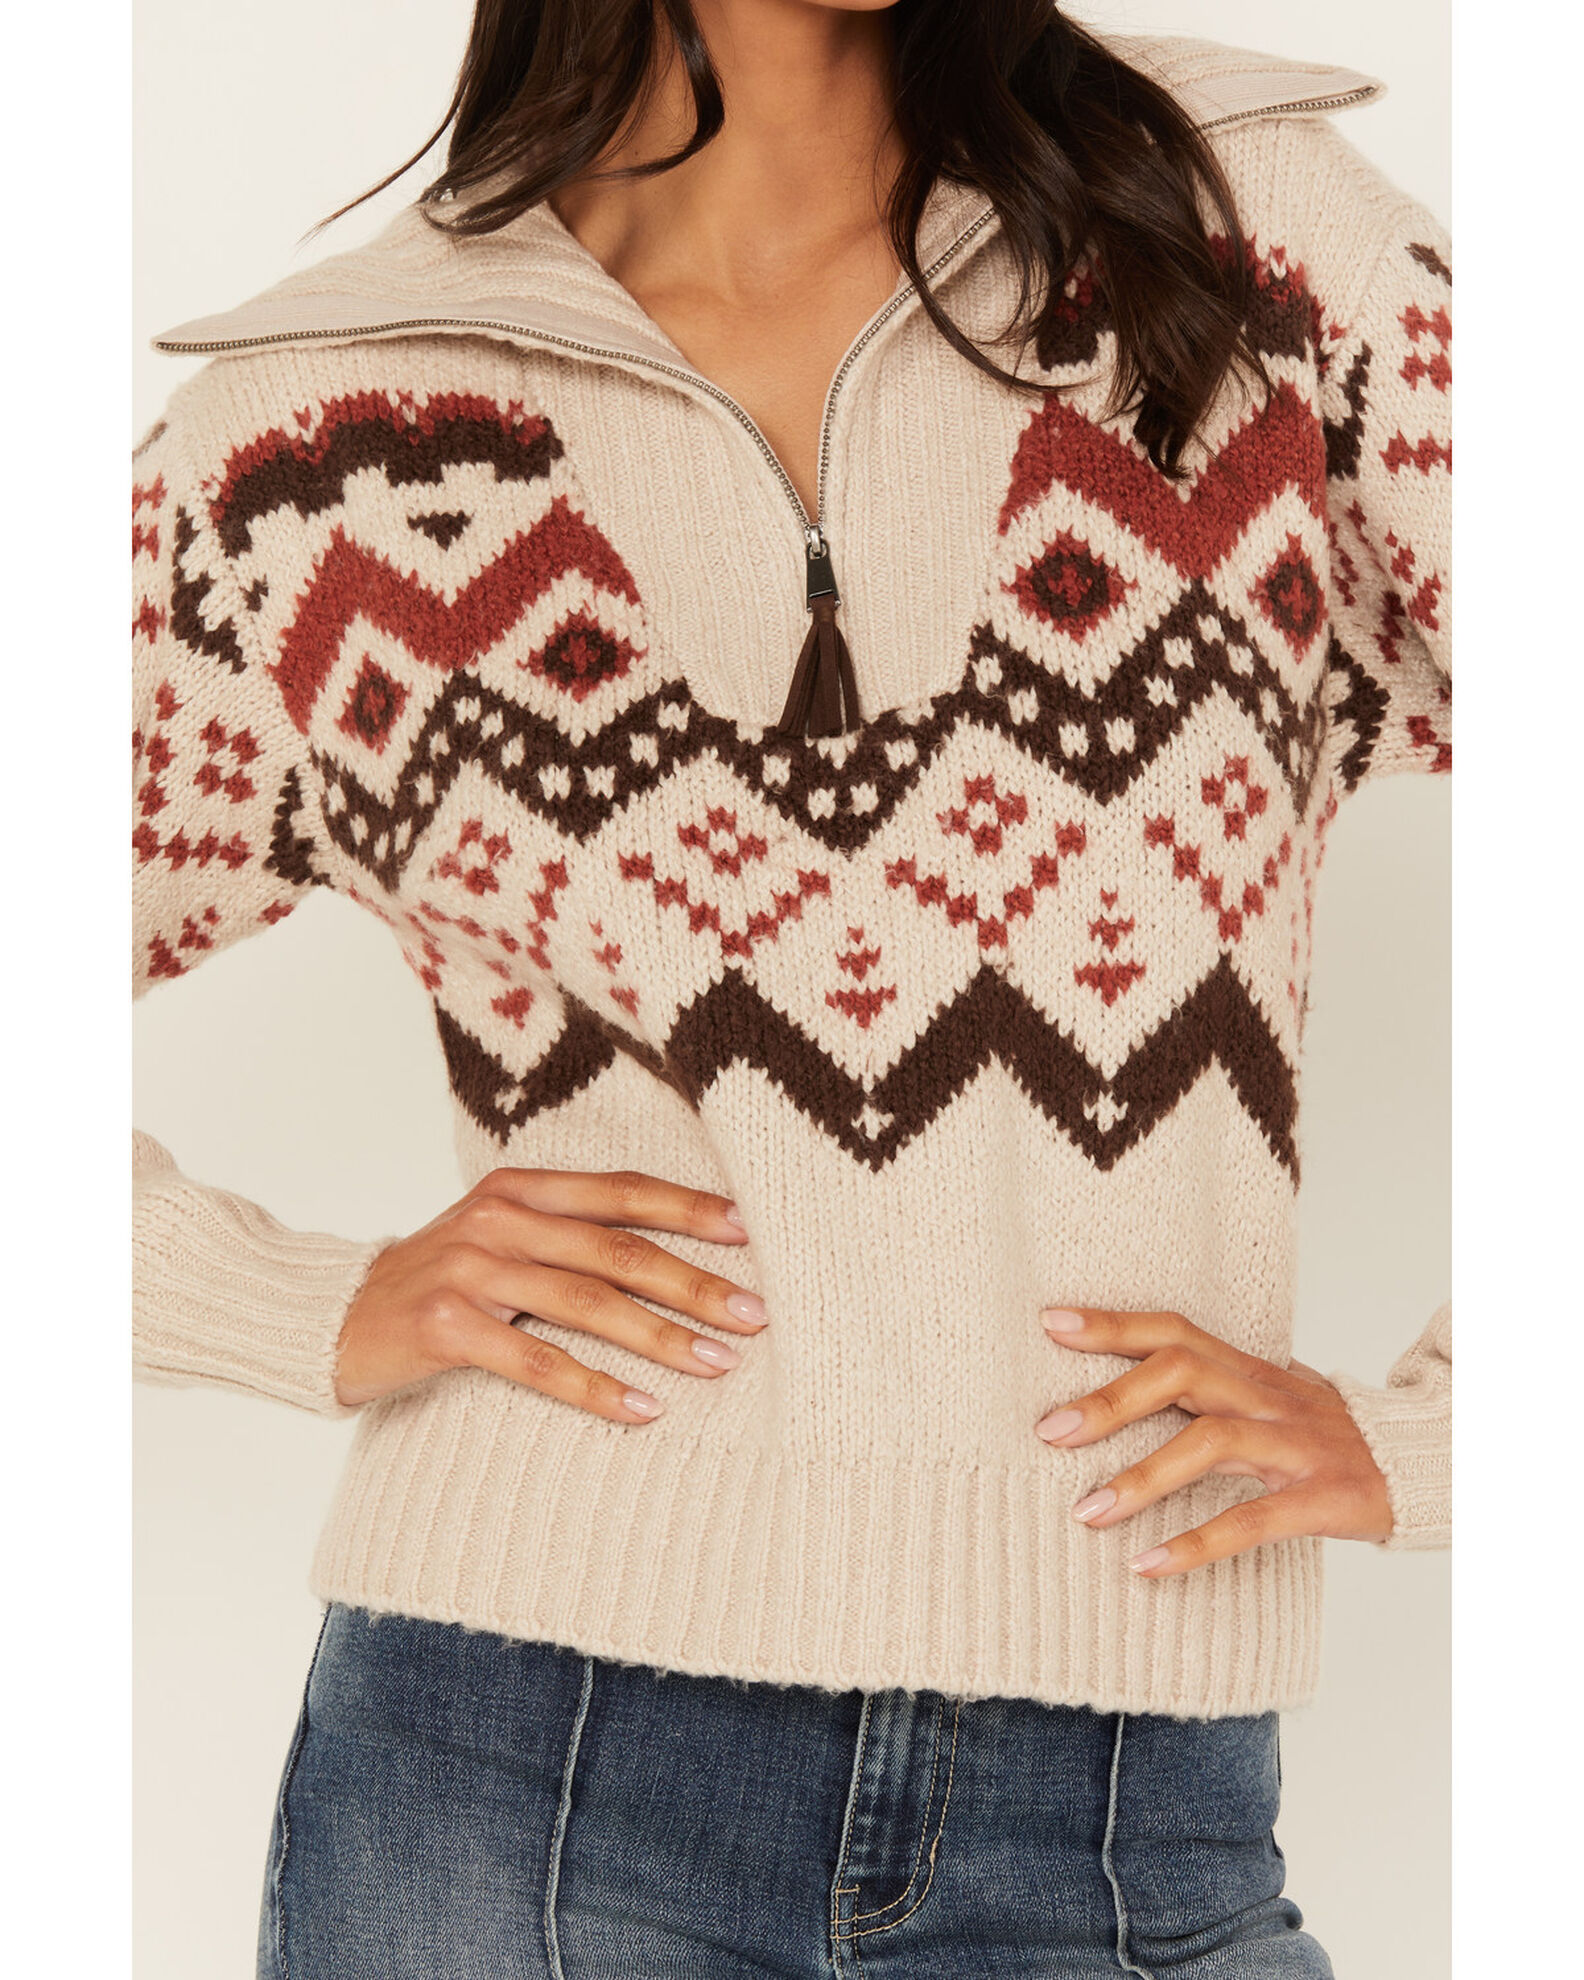 Idyllwind Women's Addison 1/4 Zip Southwestern Print Sweater